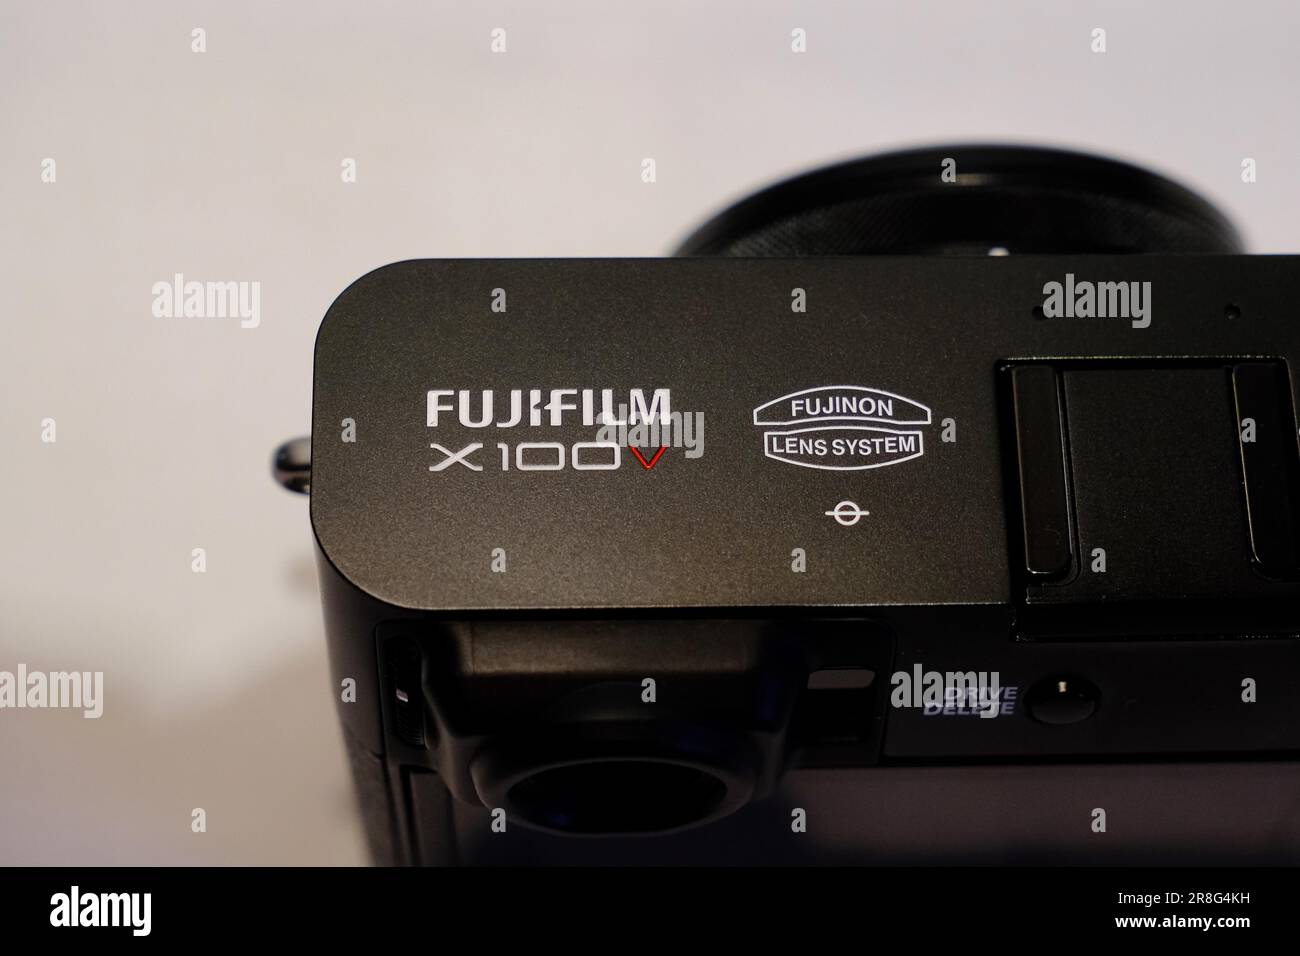 Una cámara desechable Fuji Film sobre fondo blanco Fotografía de stock -  Alamy